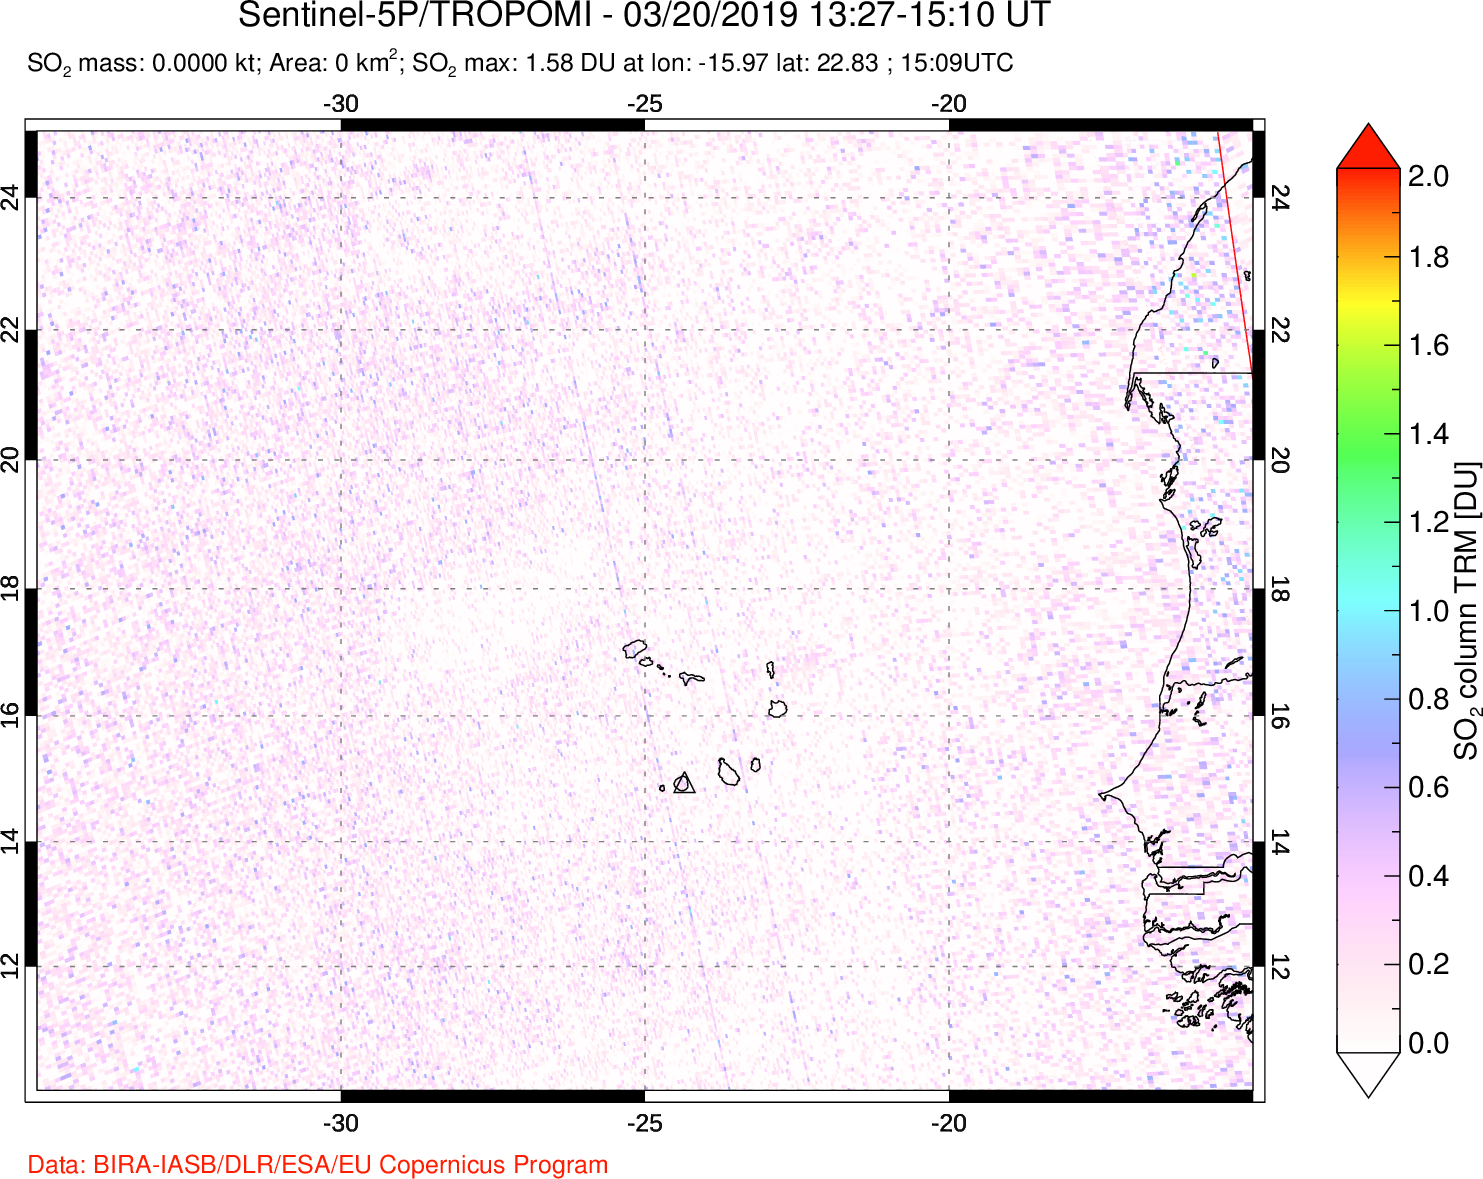 A sulfur dioxide image over Cape Verde Islands on Mar 20, 2019.